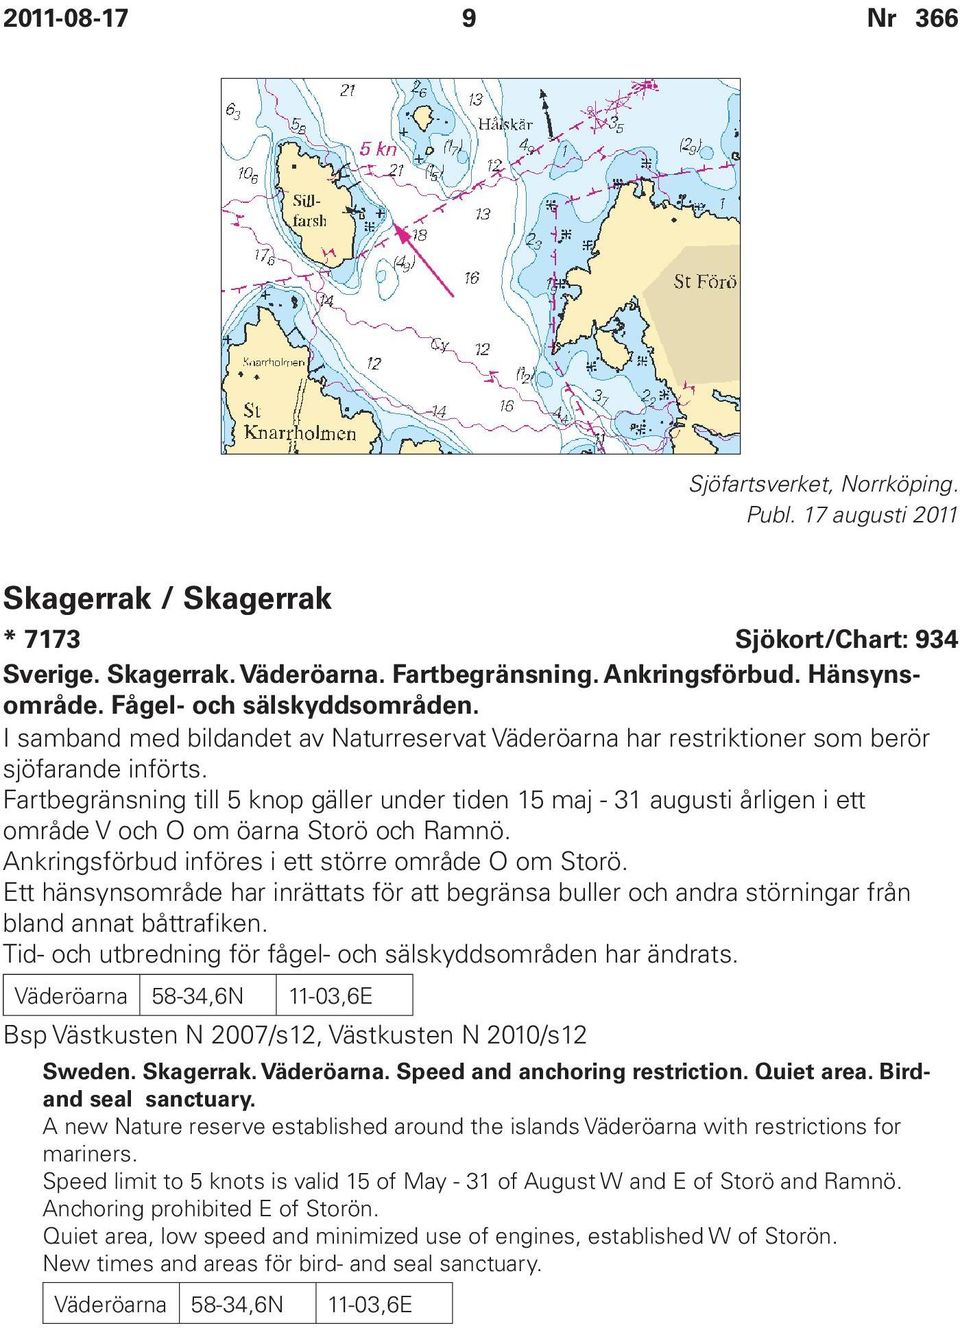 Fartbegränsning till 5 knop gäller under tiden 15 maj - 31 augusti årligen i ett område V och O om öarna Storö och Ramnö. Ankringsförbud införes i ett större område O om Storö.